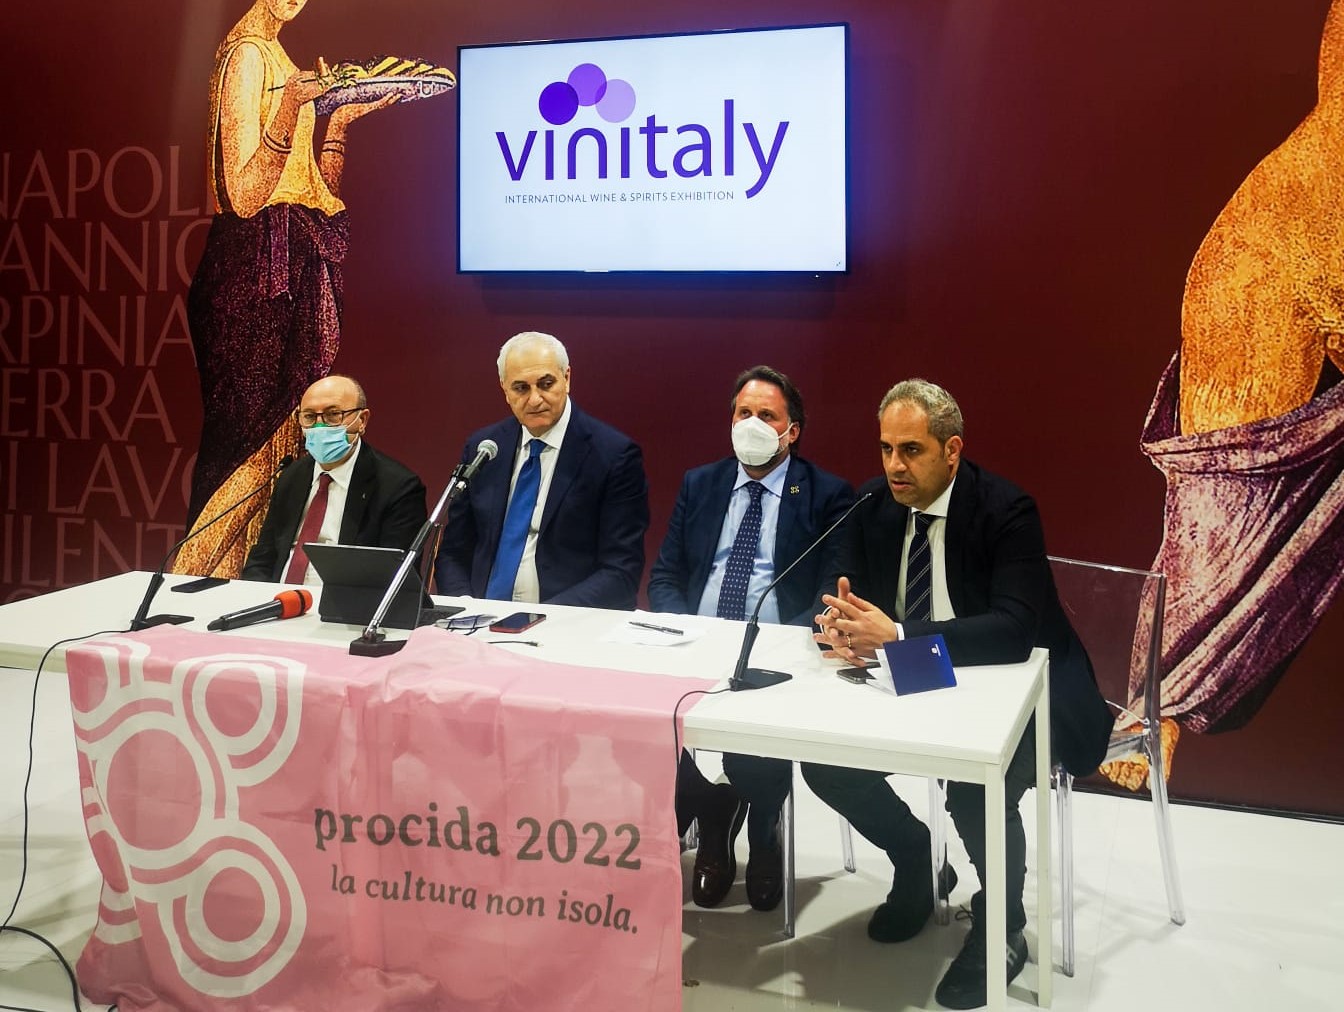 Vinitaly, Petracca: Irpinia Terroir di punta per la Campania, presto misure per enoturismo ed internazionalizzazione